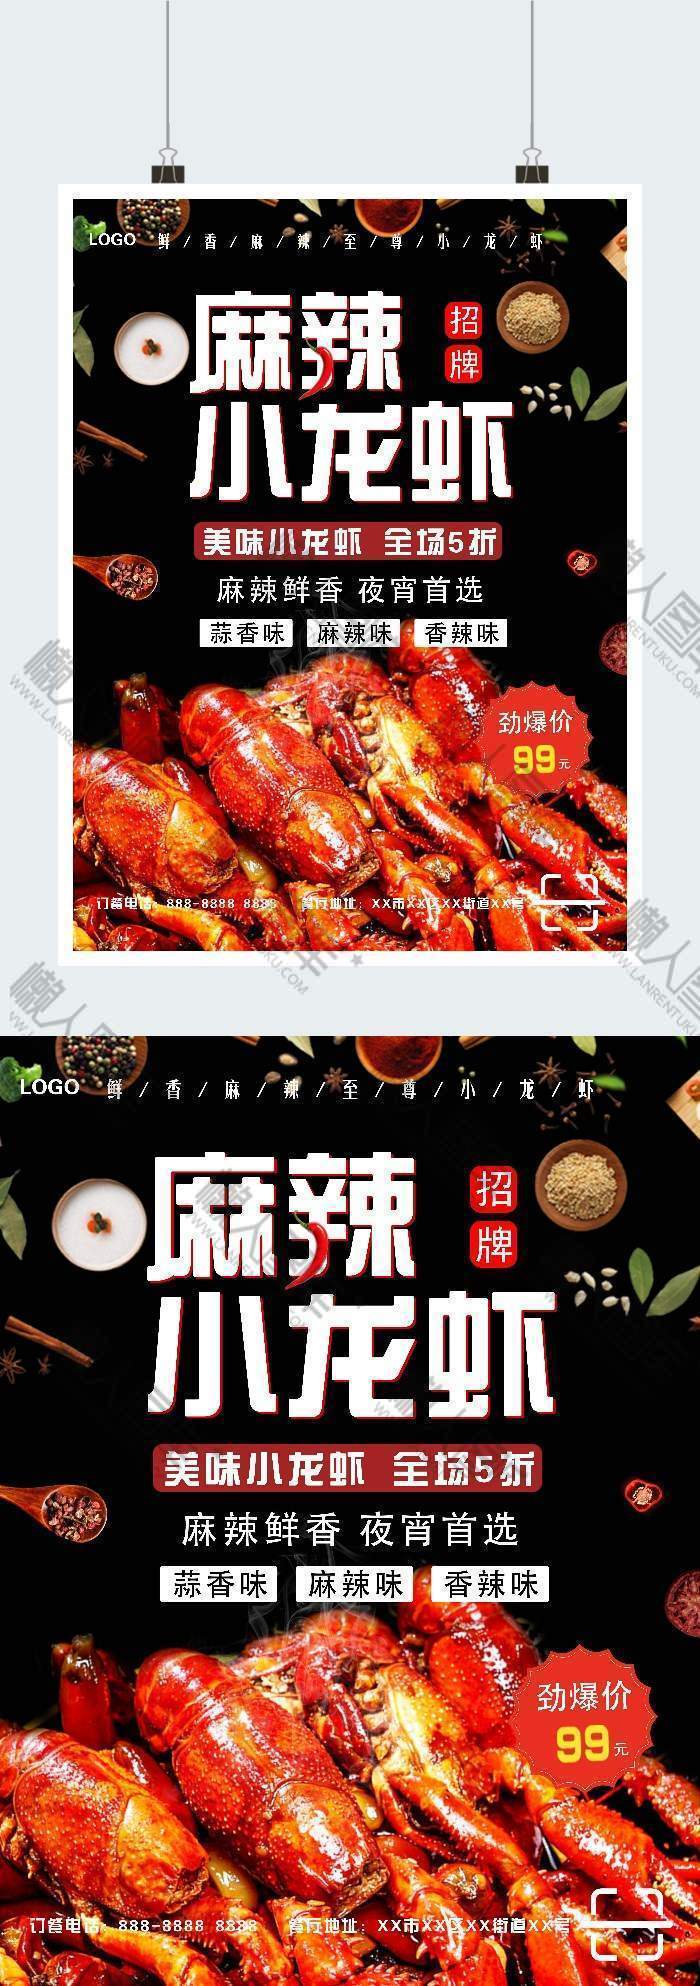 香辣小龙虾活动促销广告平面海报